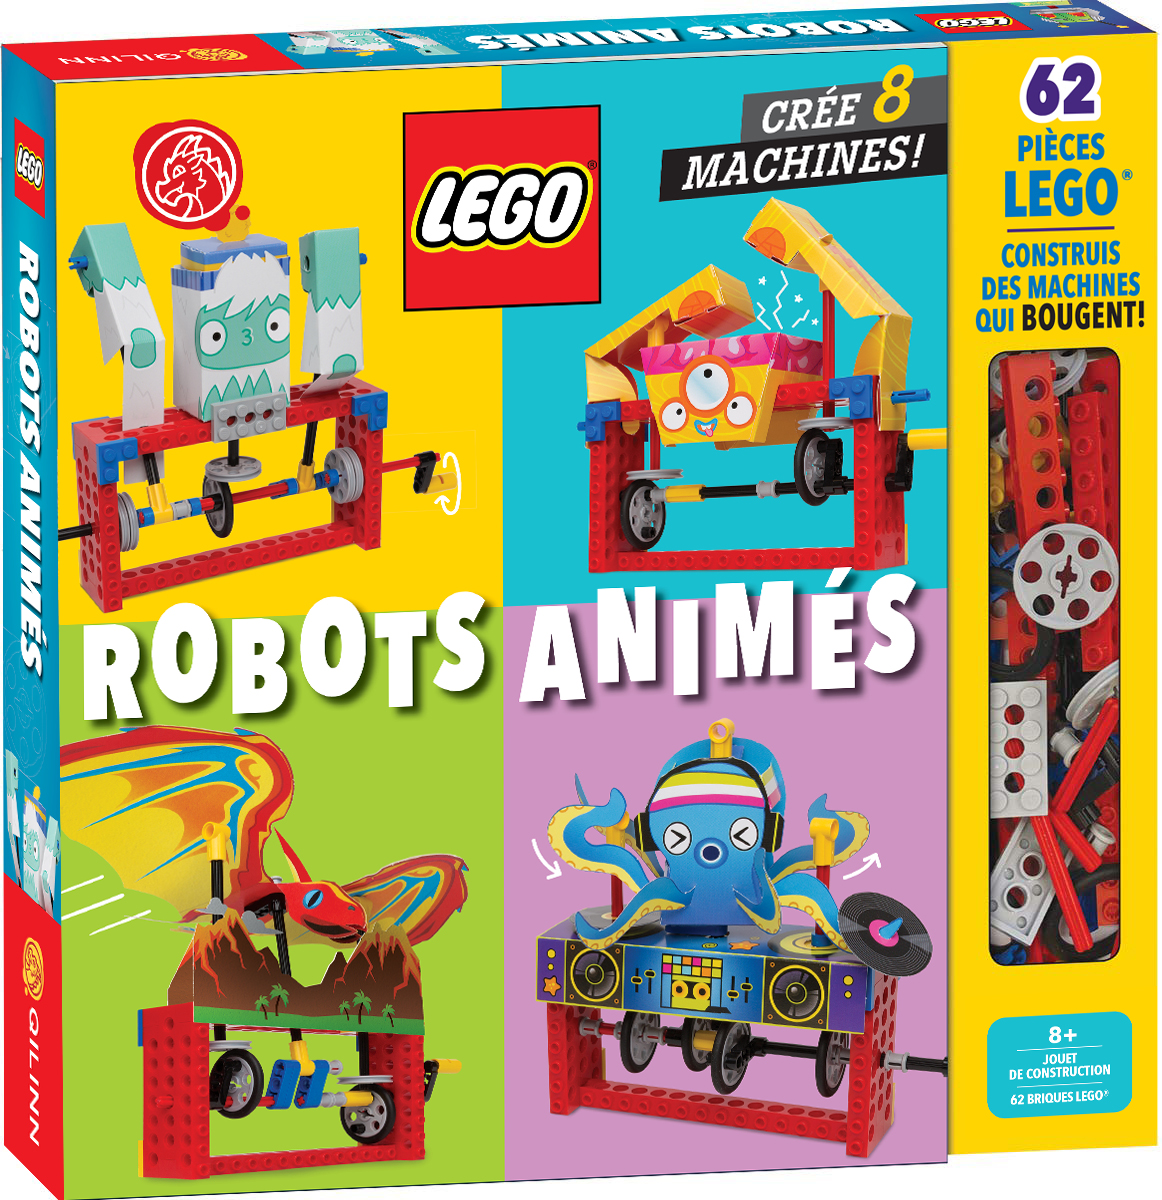 LEGO, Construis, invente, joue ! – LEGO, Robots animés - couv